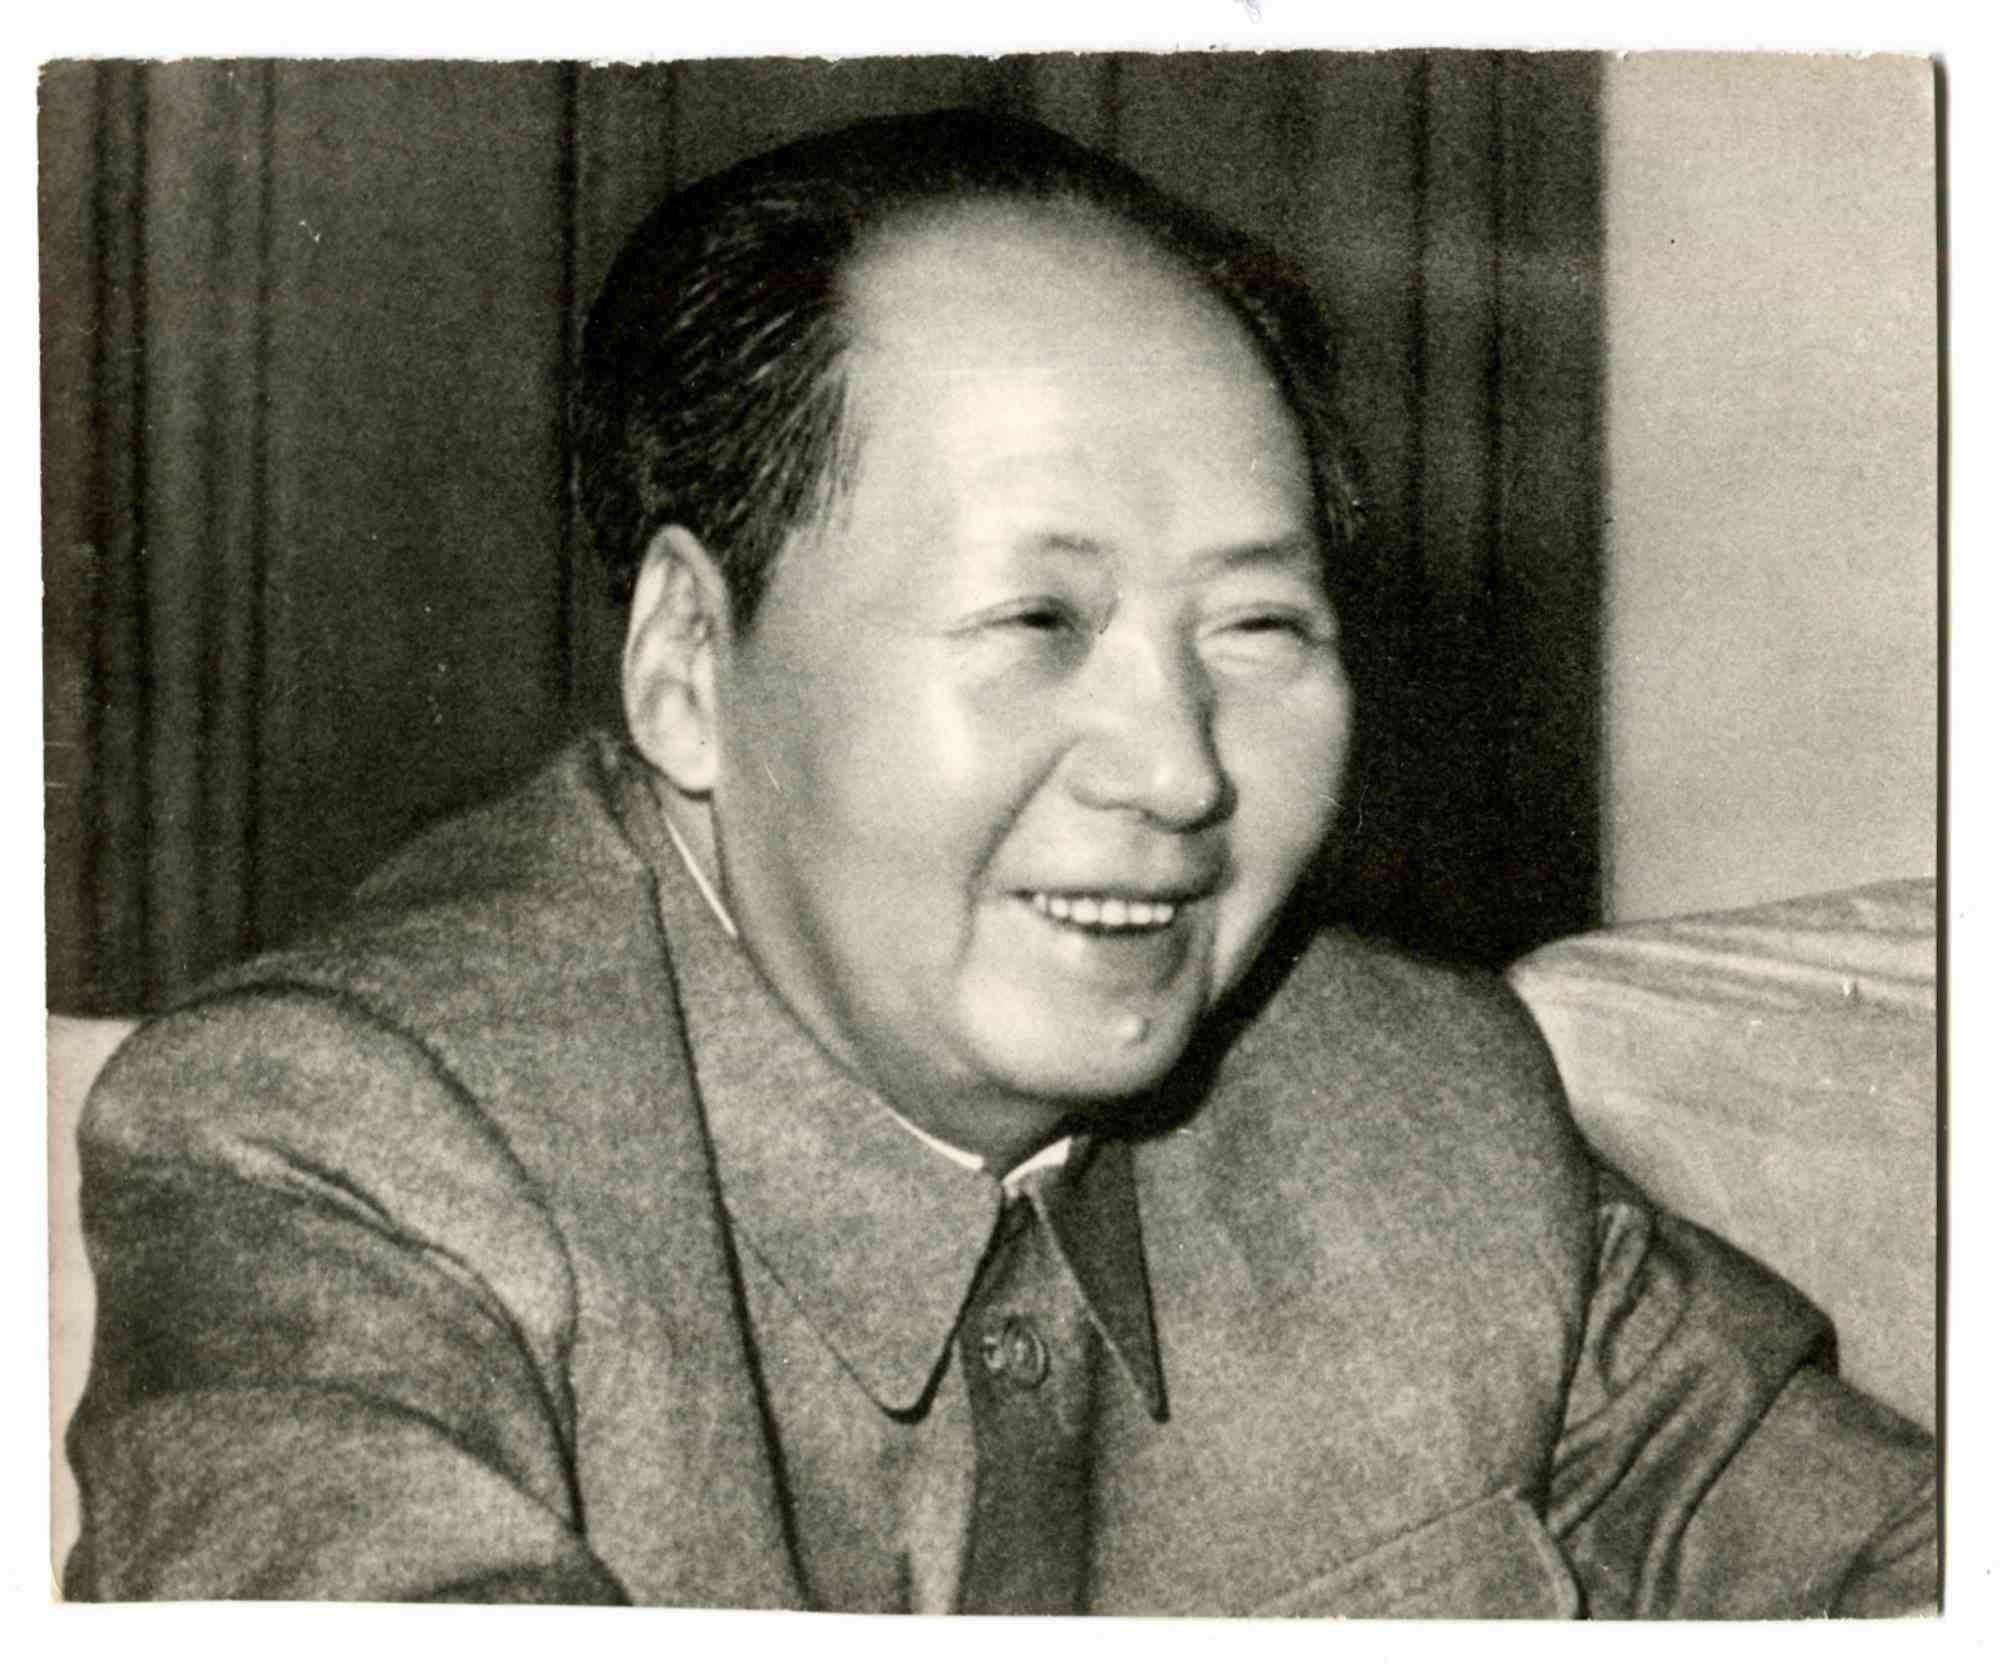 Unknown Portrait Photograph - Mao Zedong - Vintage photo - 1960s